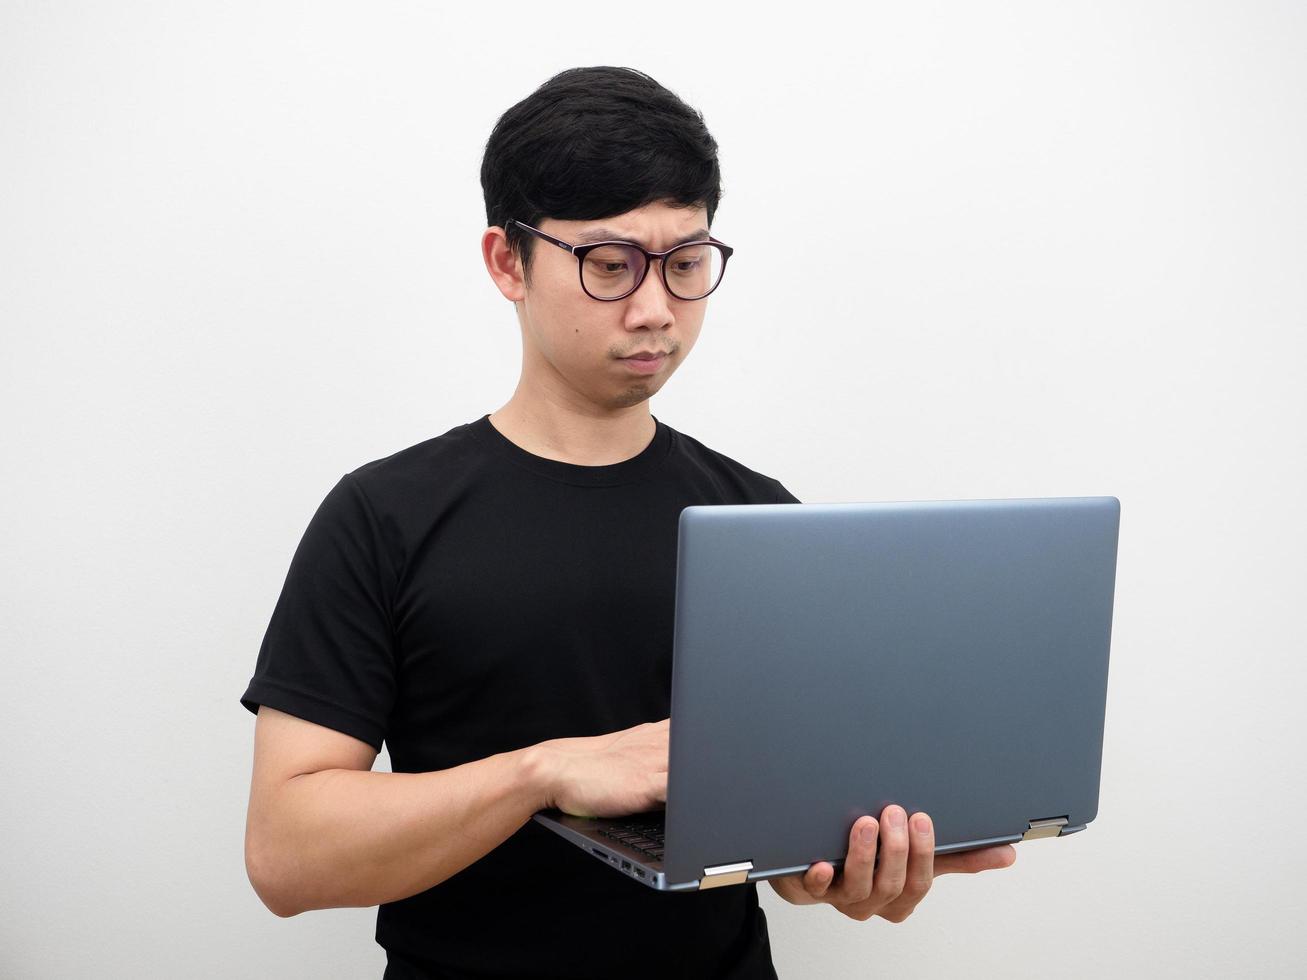 homme asiatique portant des lunettes à l'aide d'un ordinateur portable à la main visage sérieux sur fond blanc photo